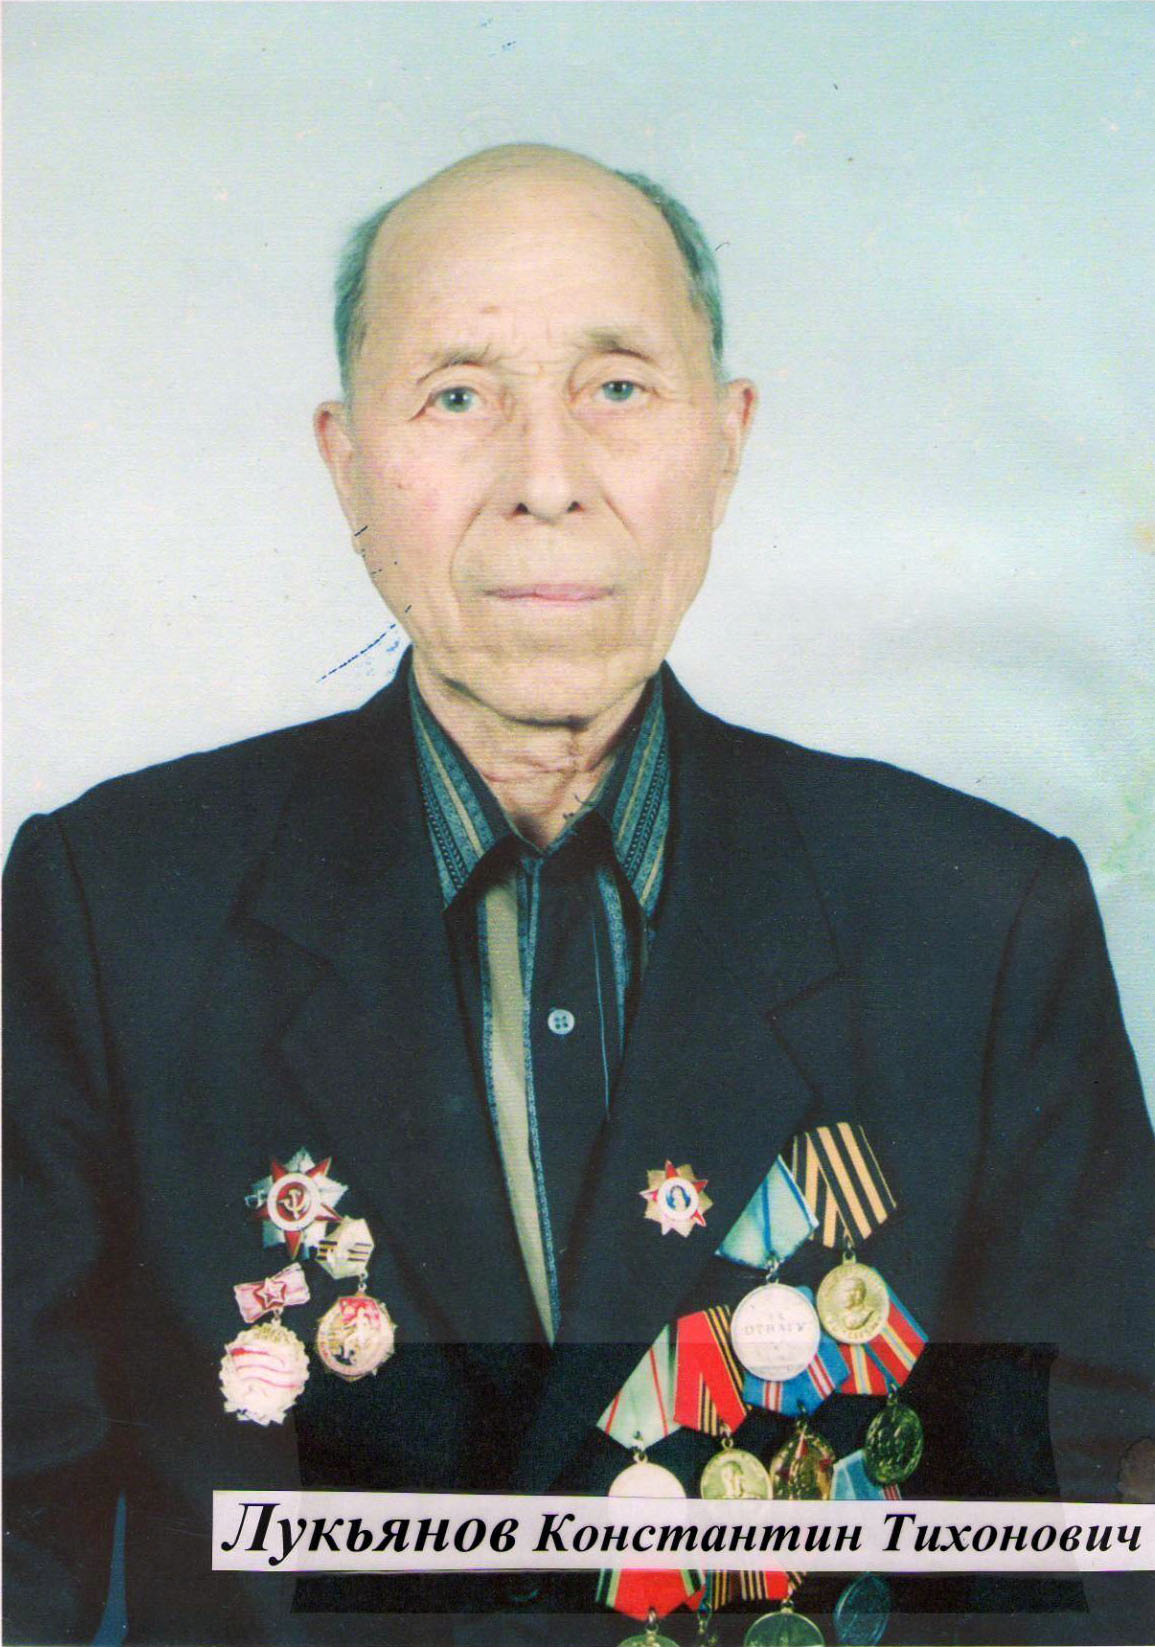 Лукьянов Константин Тихонович